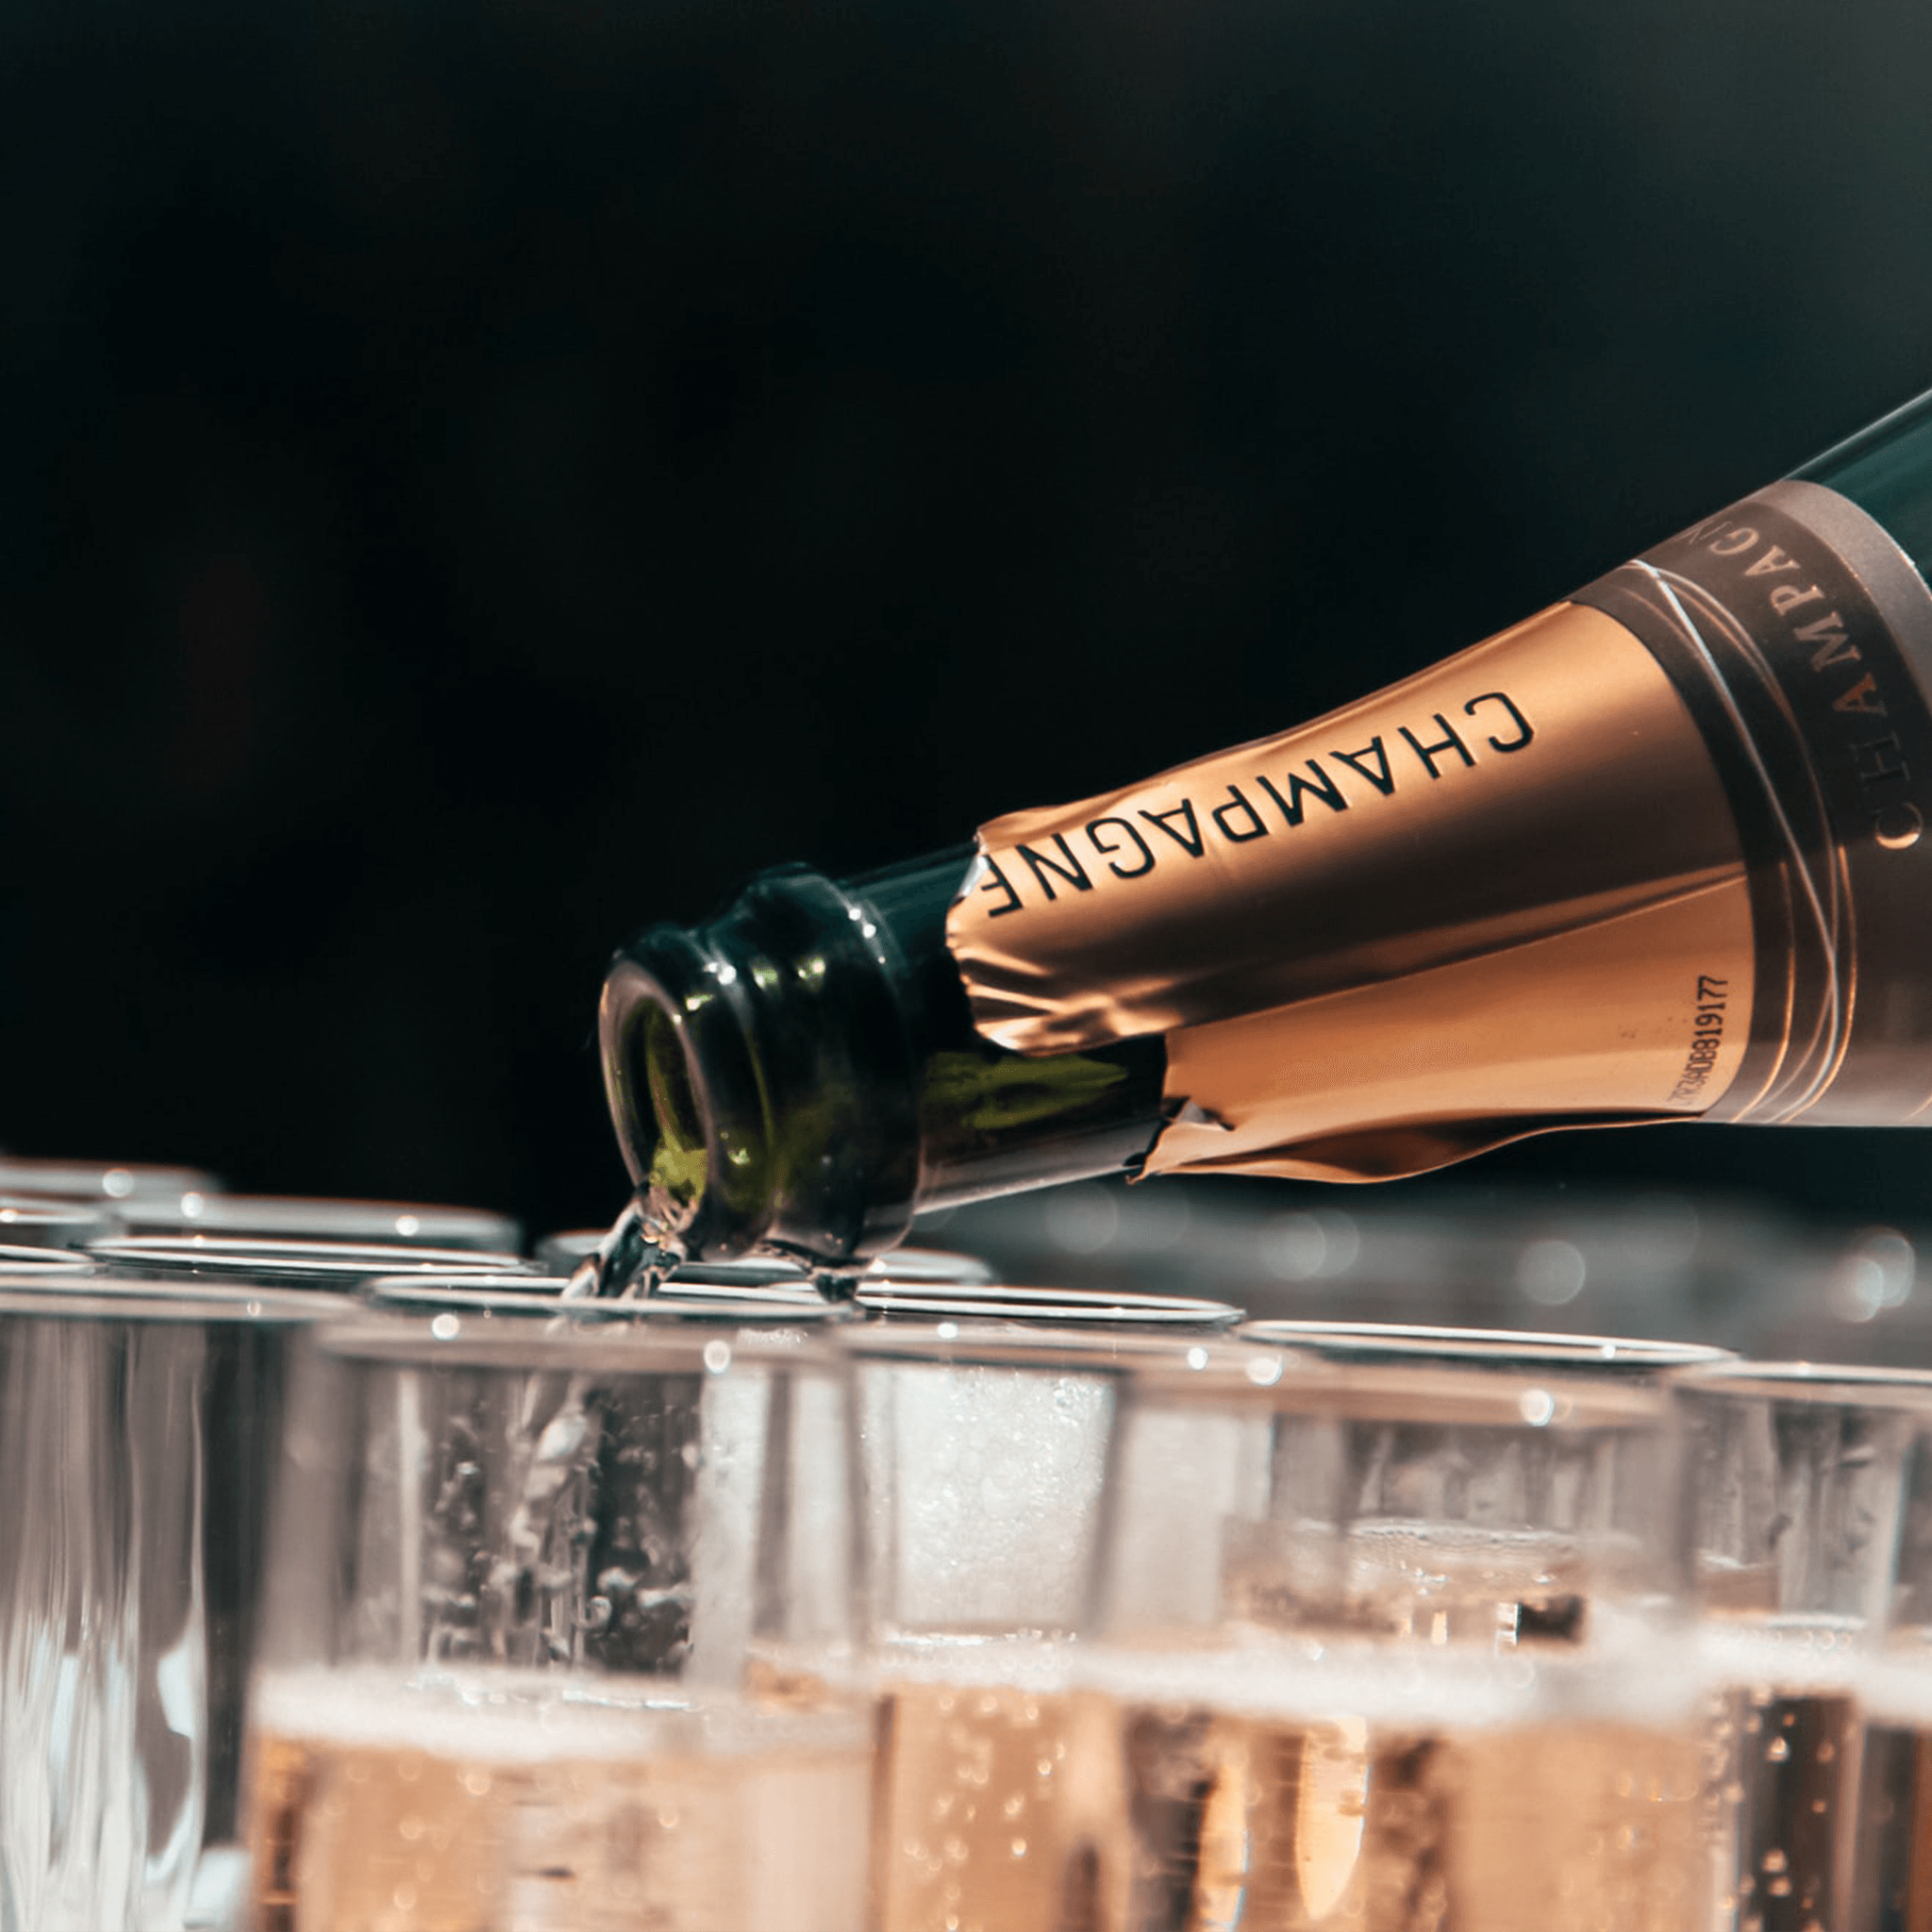 Les bouchons pour la conservation du champagne